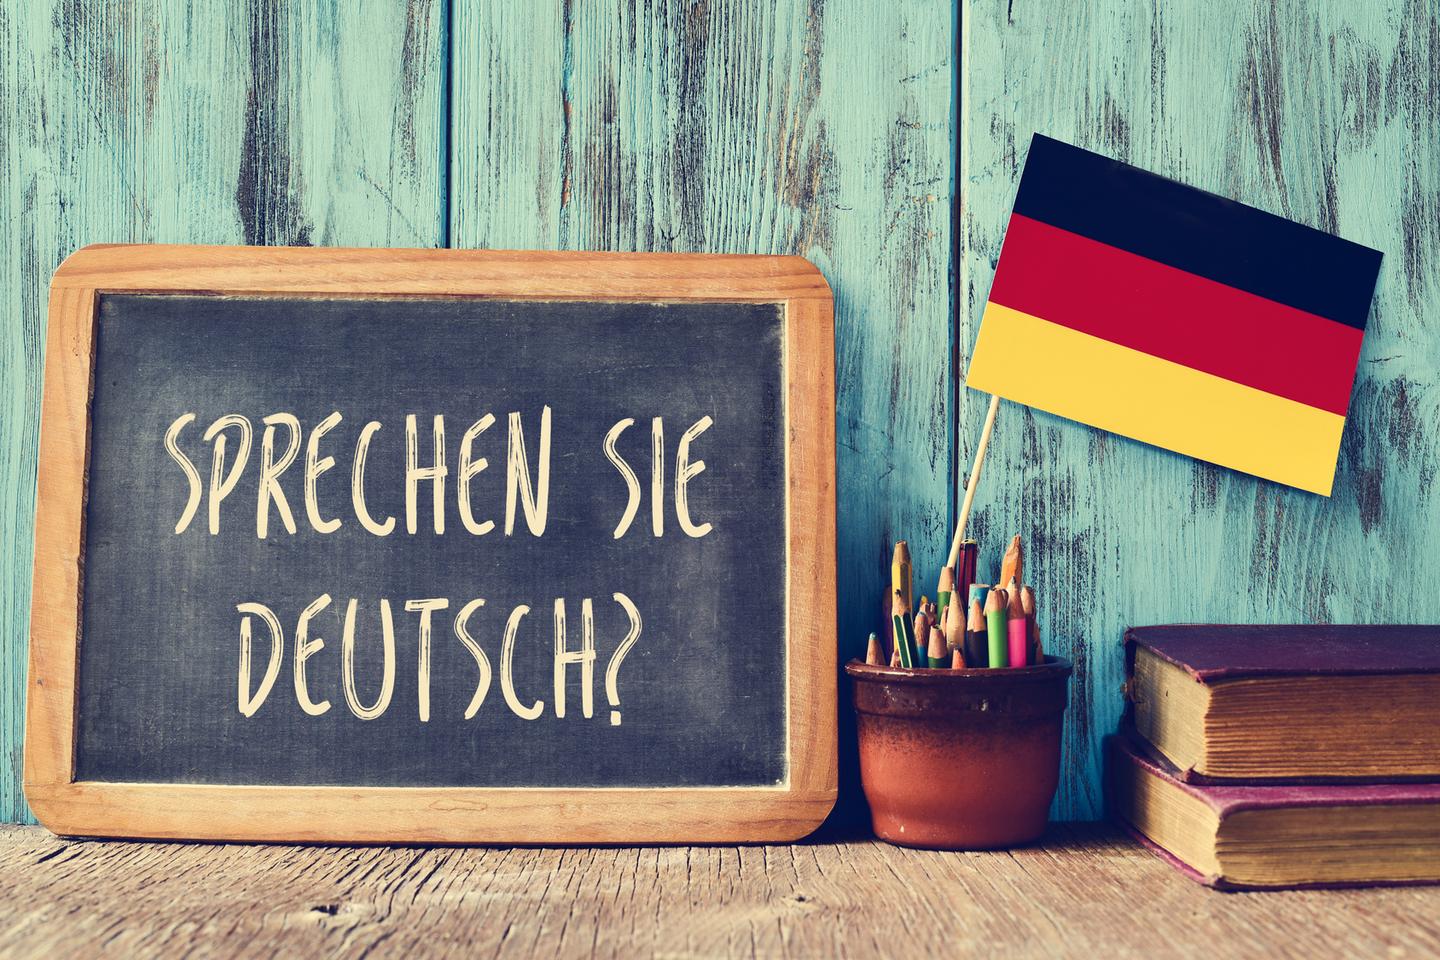 【德国语言班】德国大学语言班vs私立语言班—费用&教学详解!